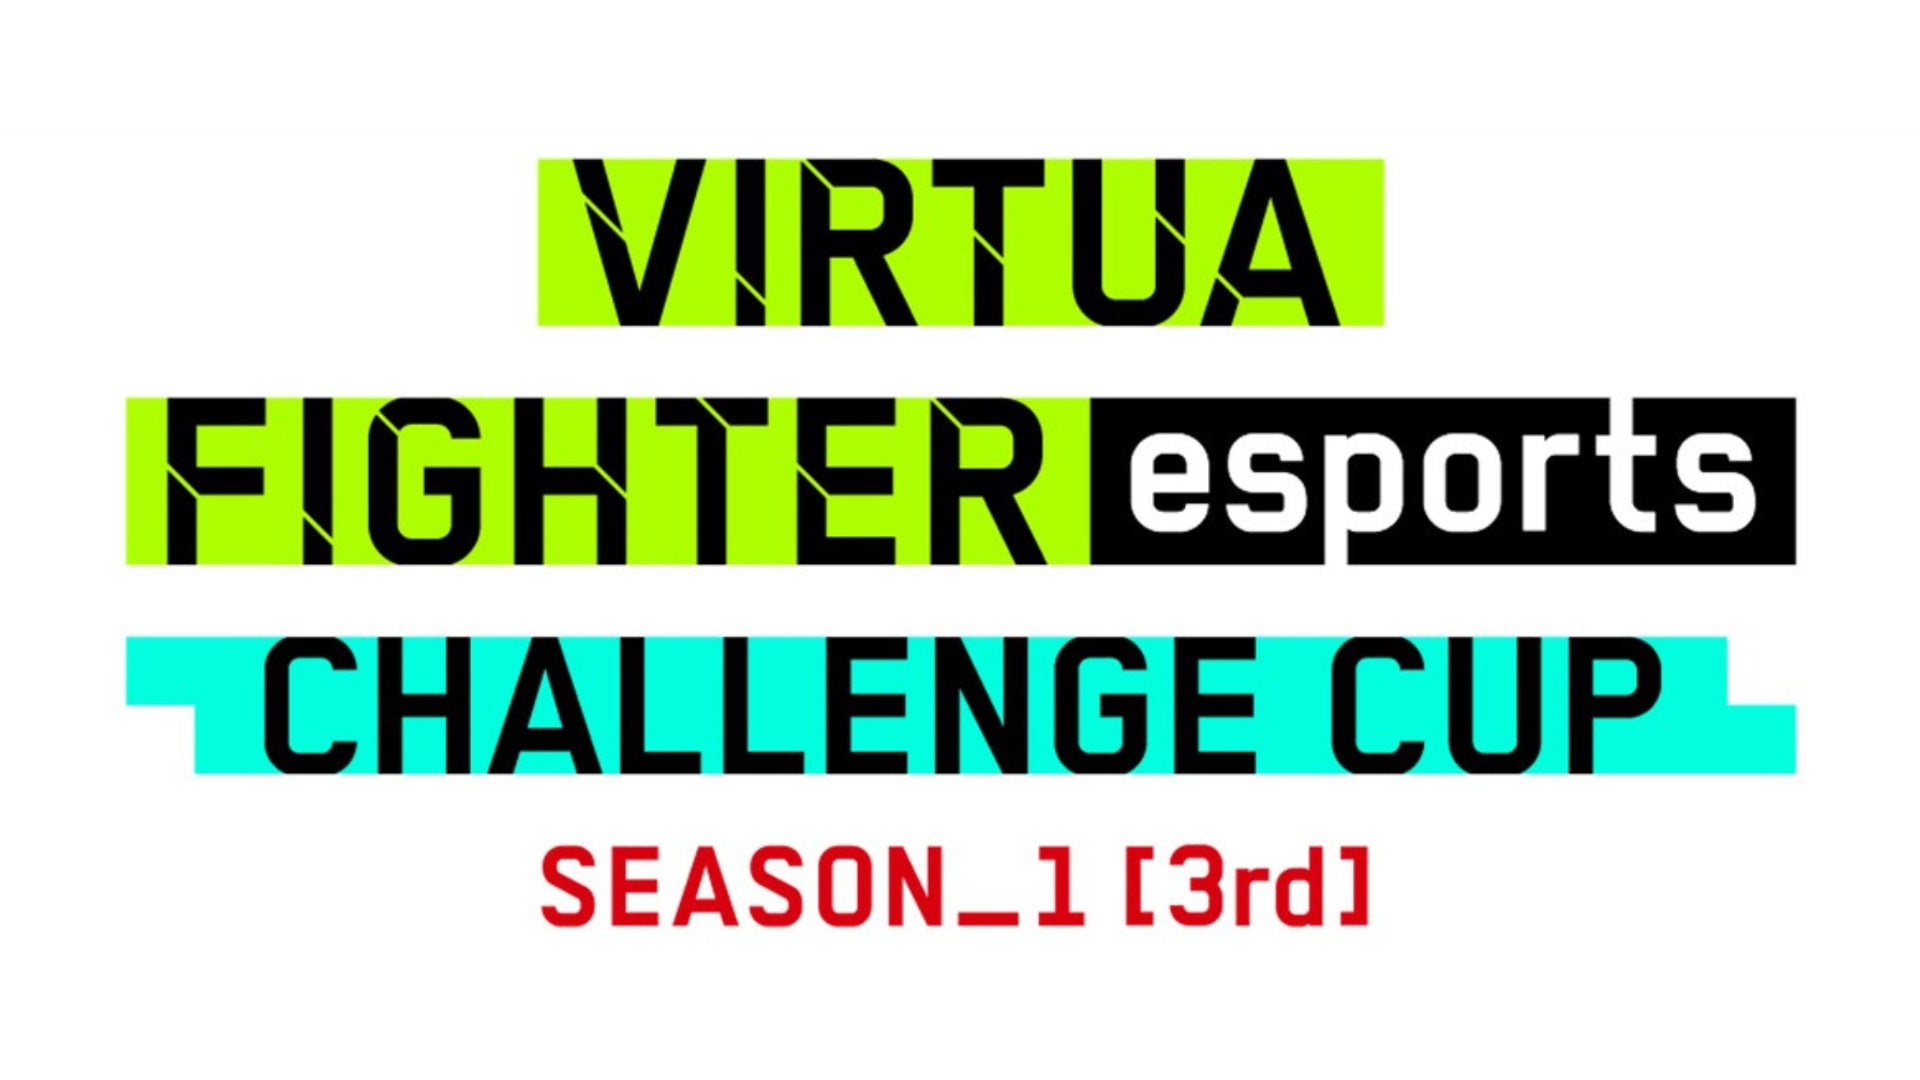 セガ公式「VIRTUA FIGHTER esports CHALLENGE CUP SEASON_1【3rd】FREE FINAL／3on3 FINAL」観覧事前登録キャンペーン開始！